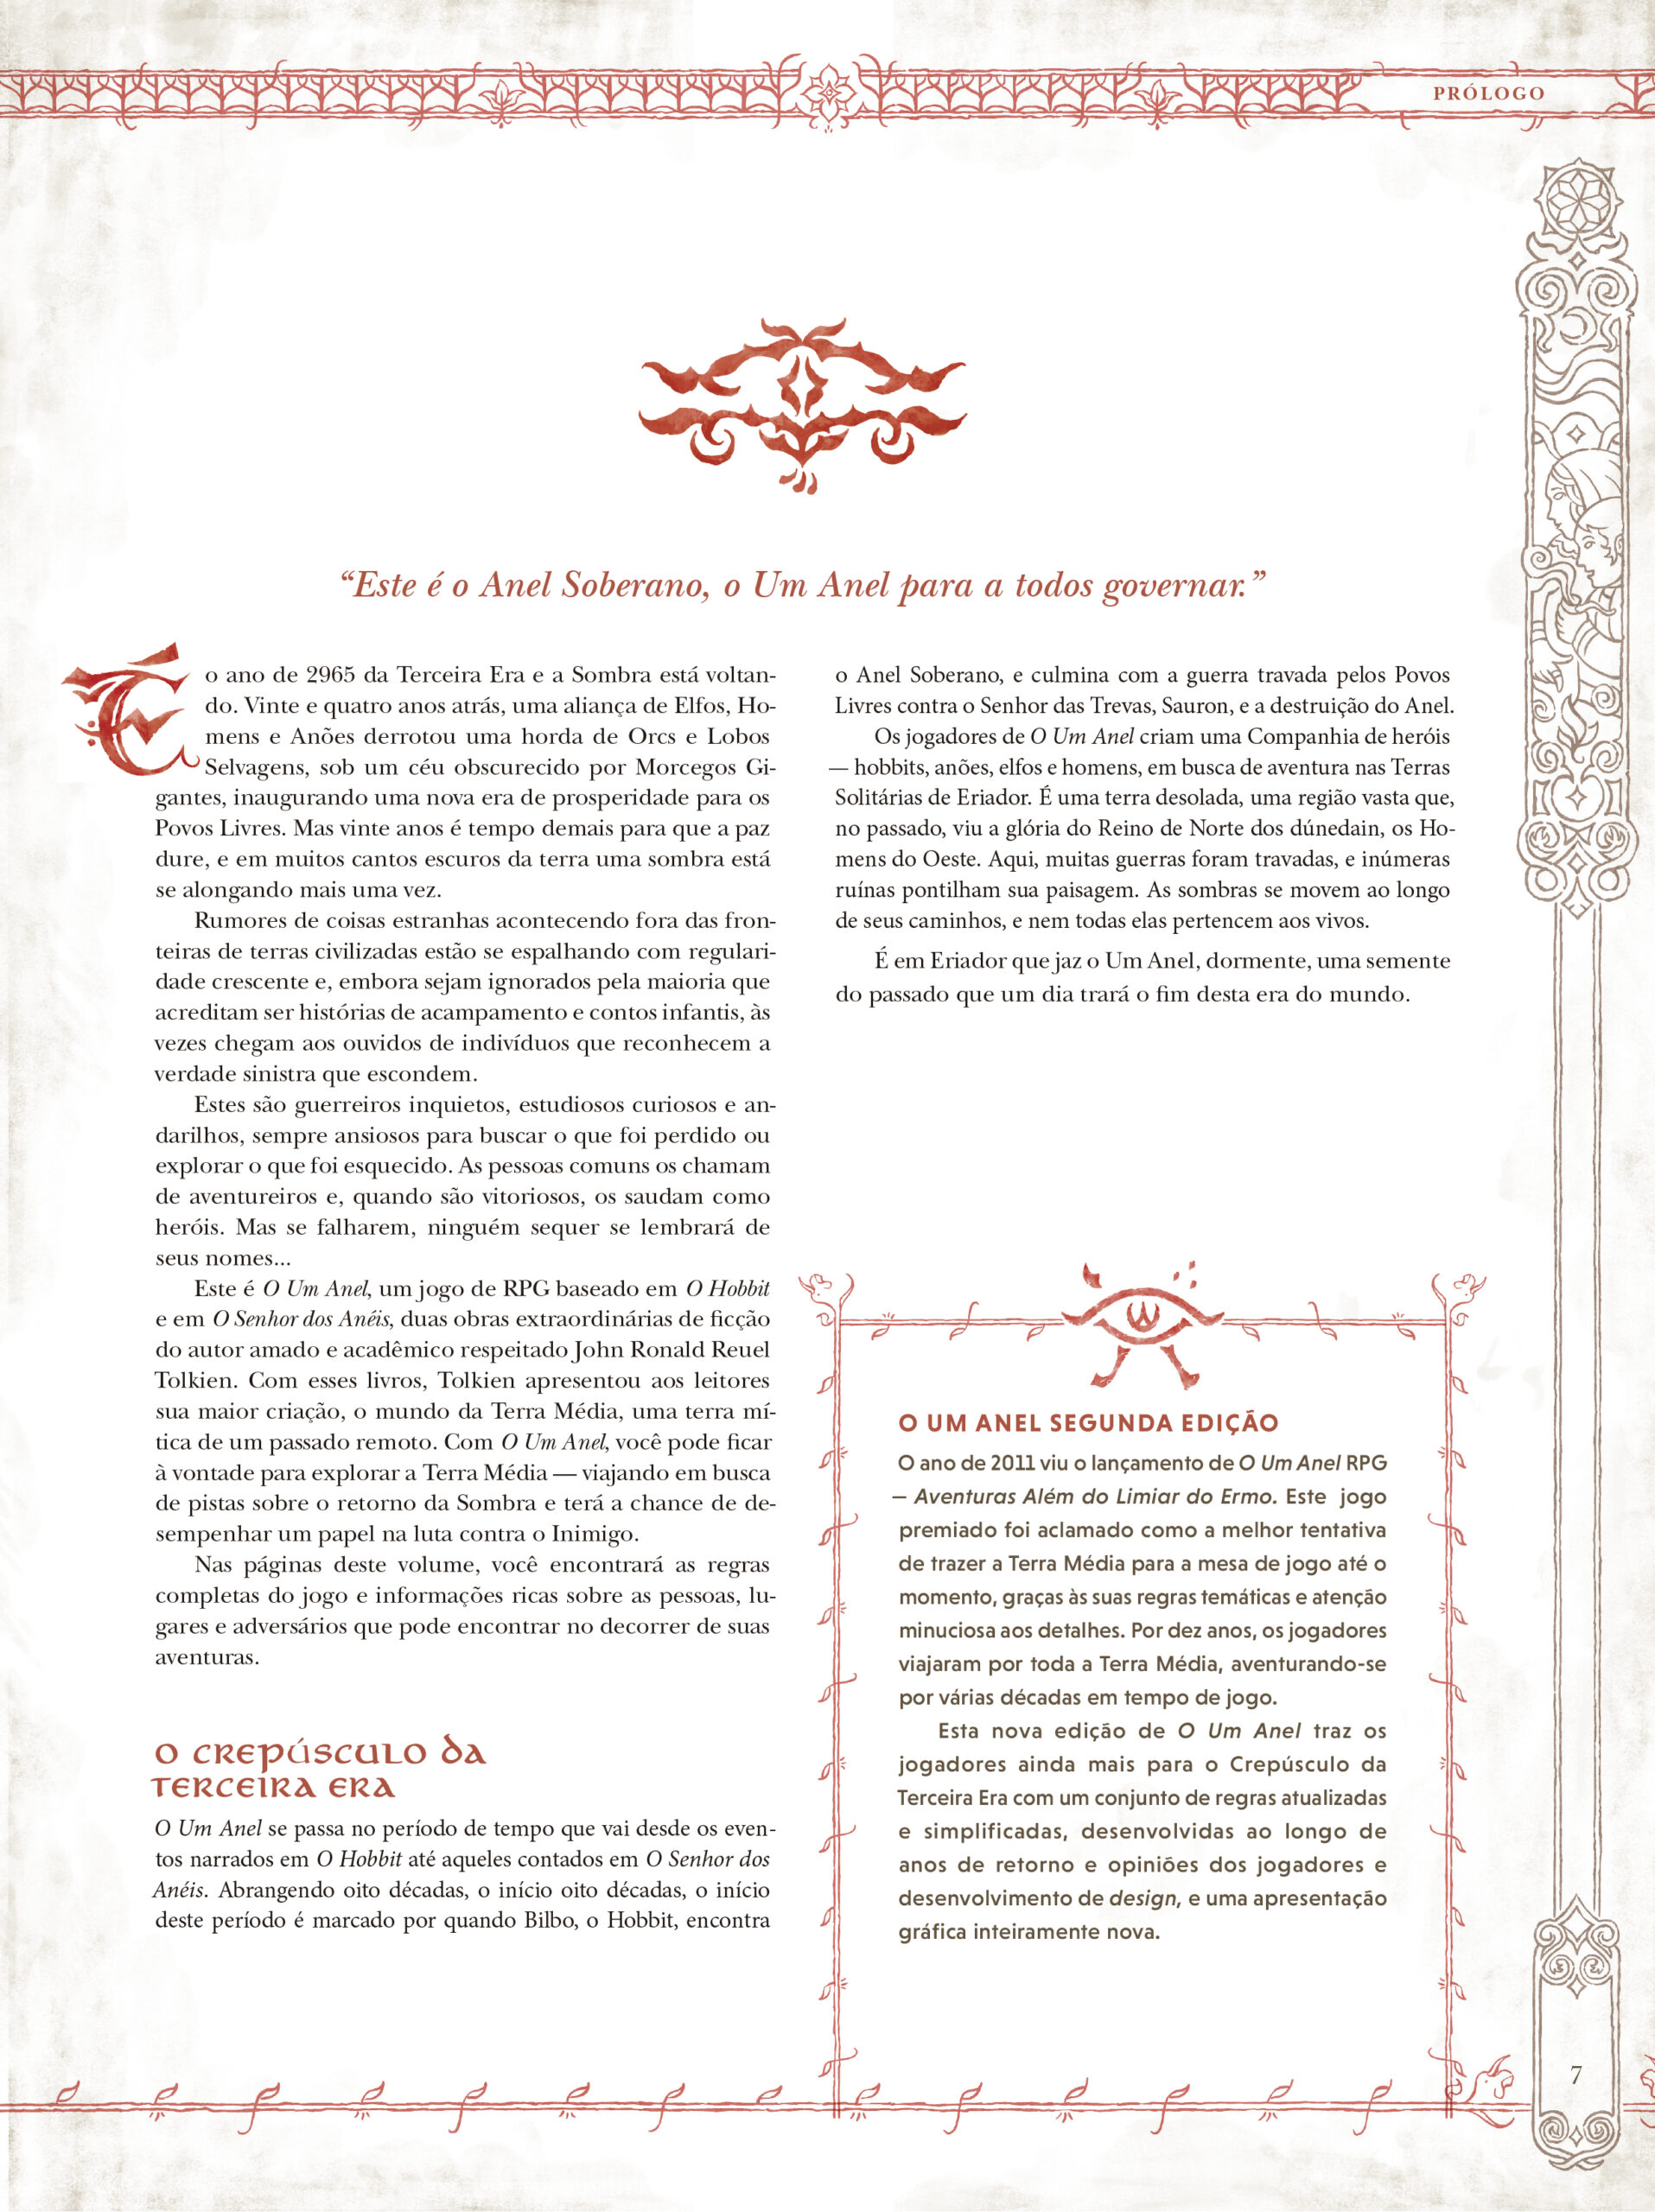 O Um Anel: RPG No Mundo do Senhor dos Anéis - Nova Edição